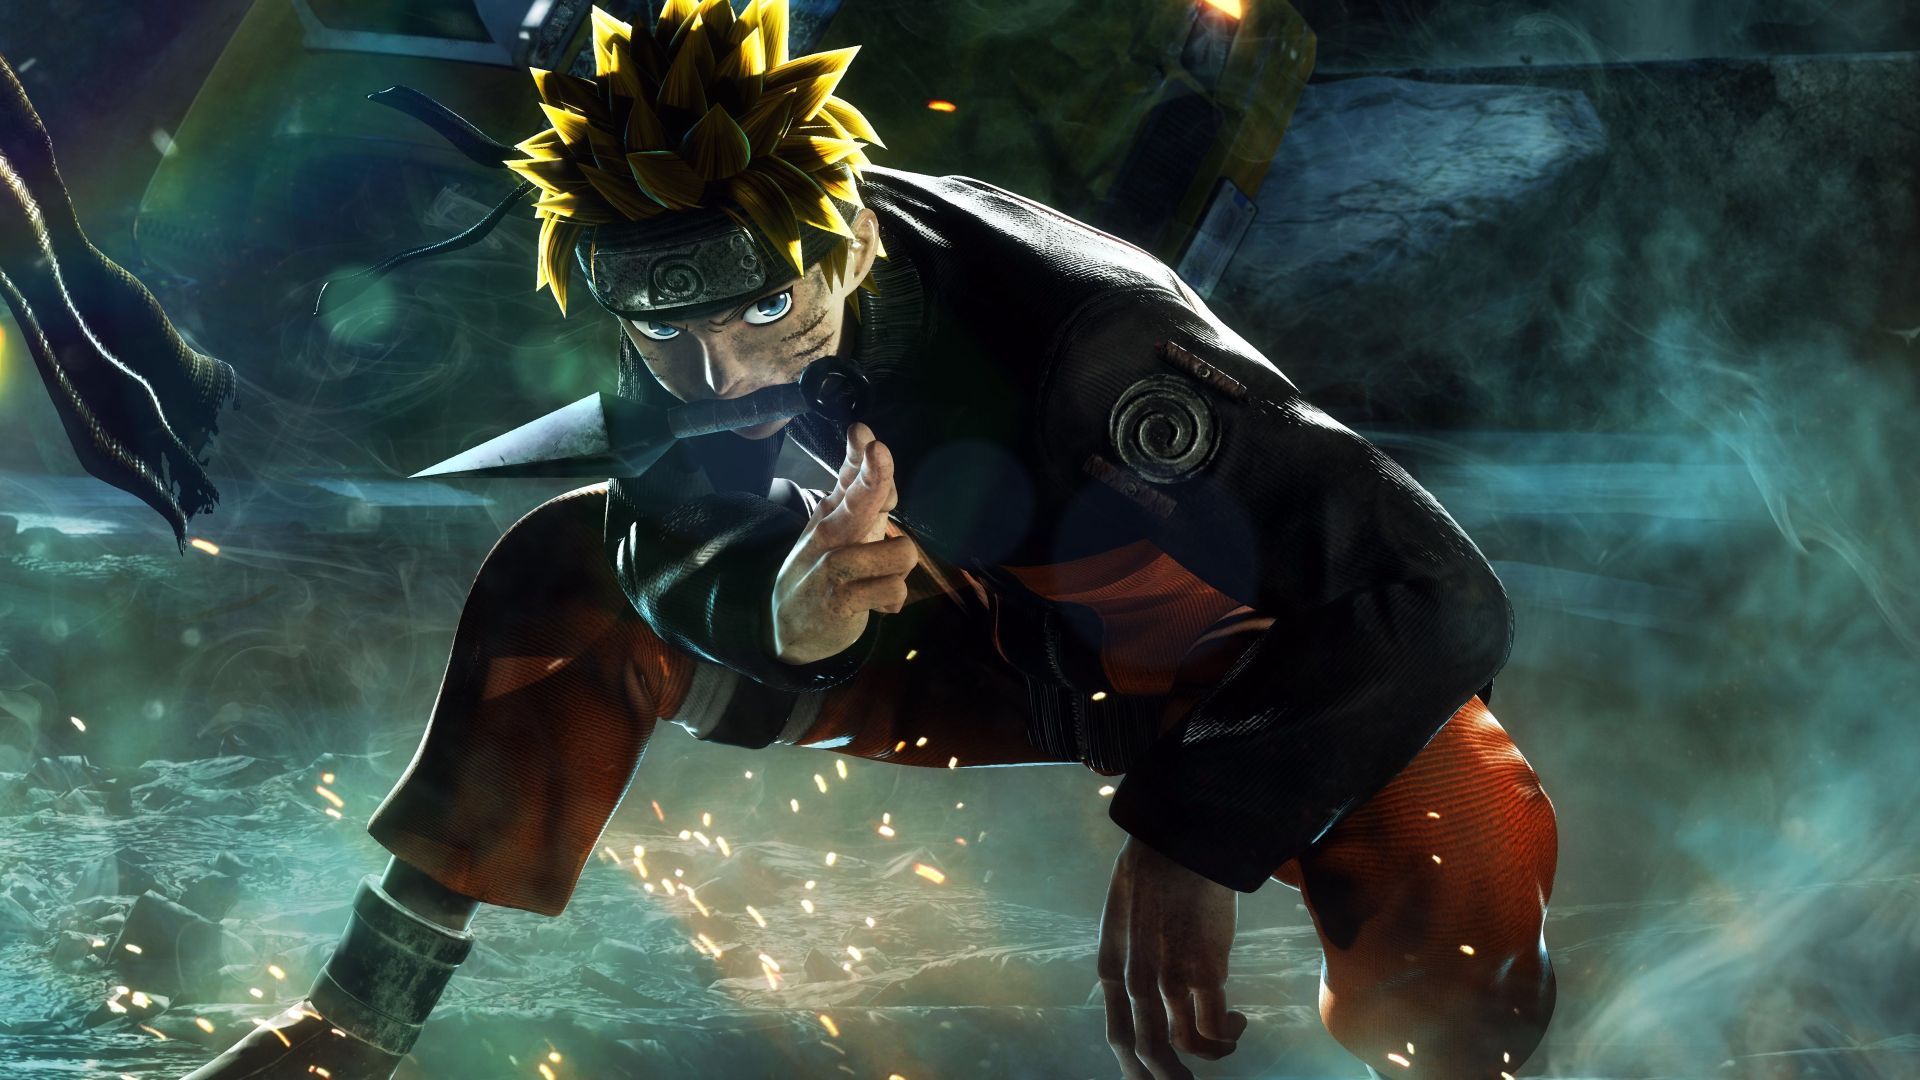 Naruto: Naruto là một trong những truyện tranh nổi tiếng nhất thế giới. Câu chuyện về chàng trai có một ước mơ lớn và quyết tâm cuồng nhiệt để trở thành Hokage đã chiếm được trái tim của hàng triệu người hâm mộ. Hãy thưởng thức hình ảnh về Naruto và cùng nhau bước vào thế giới phép thuật đầy màu sắc.